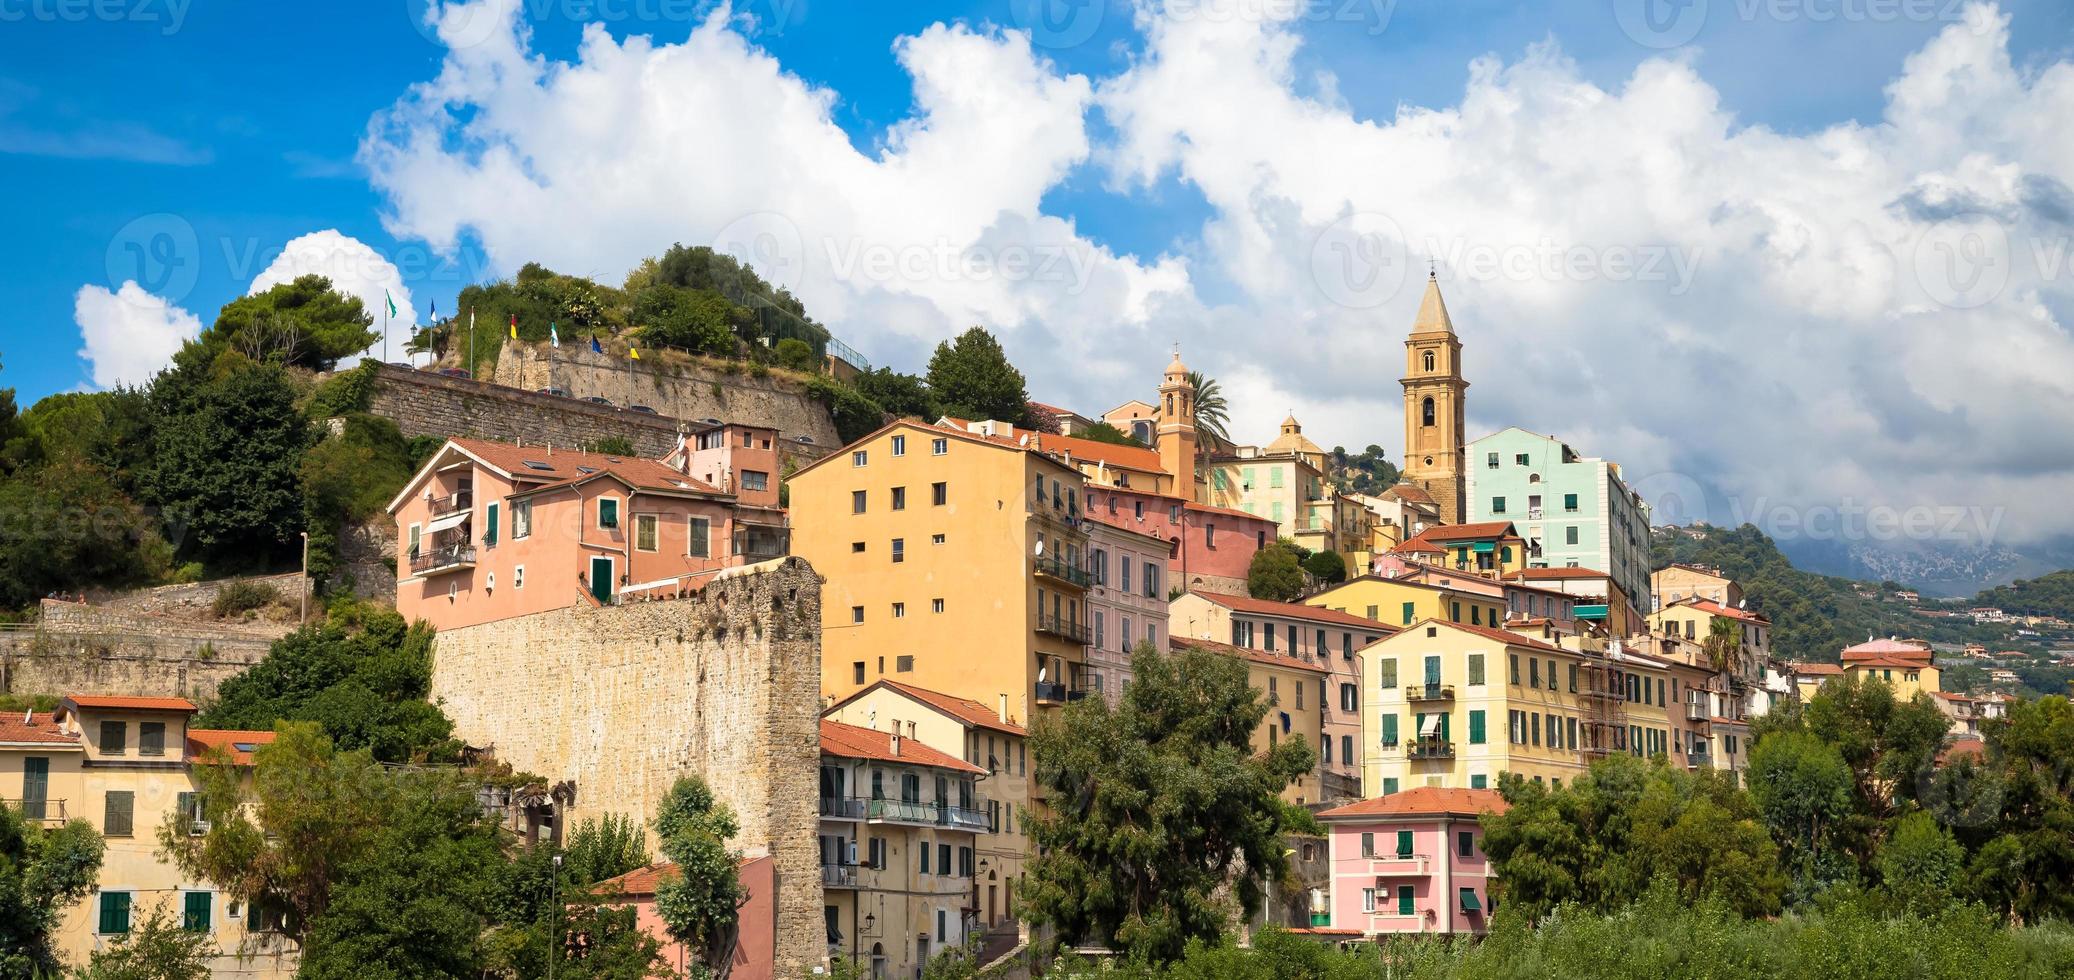 Ventimiglia dorp in Italië, regio Ligurië, met een blauwe lucht foto